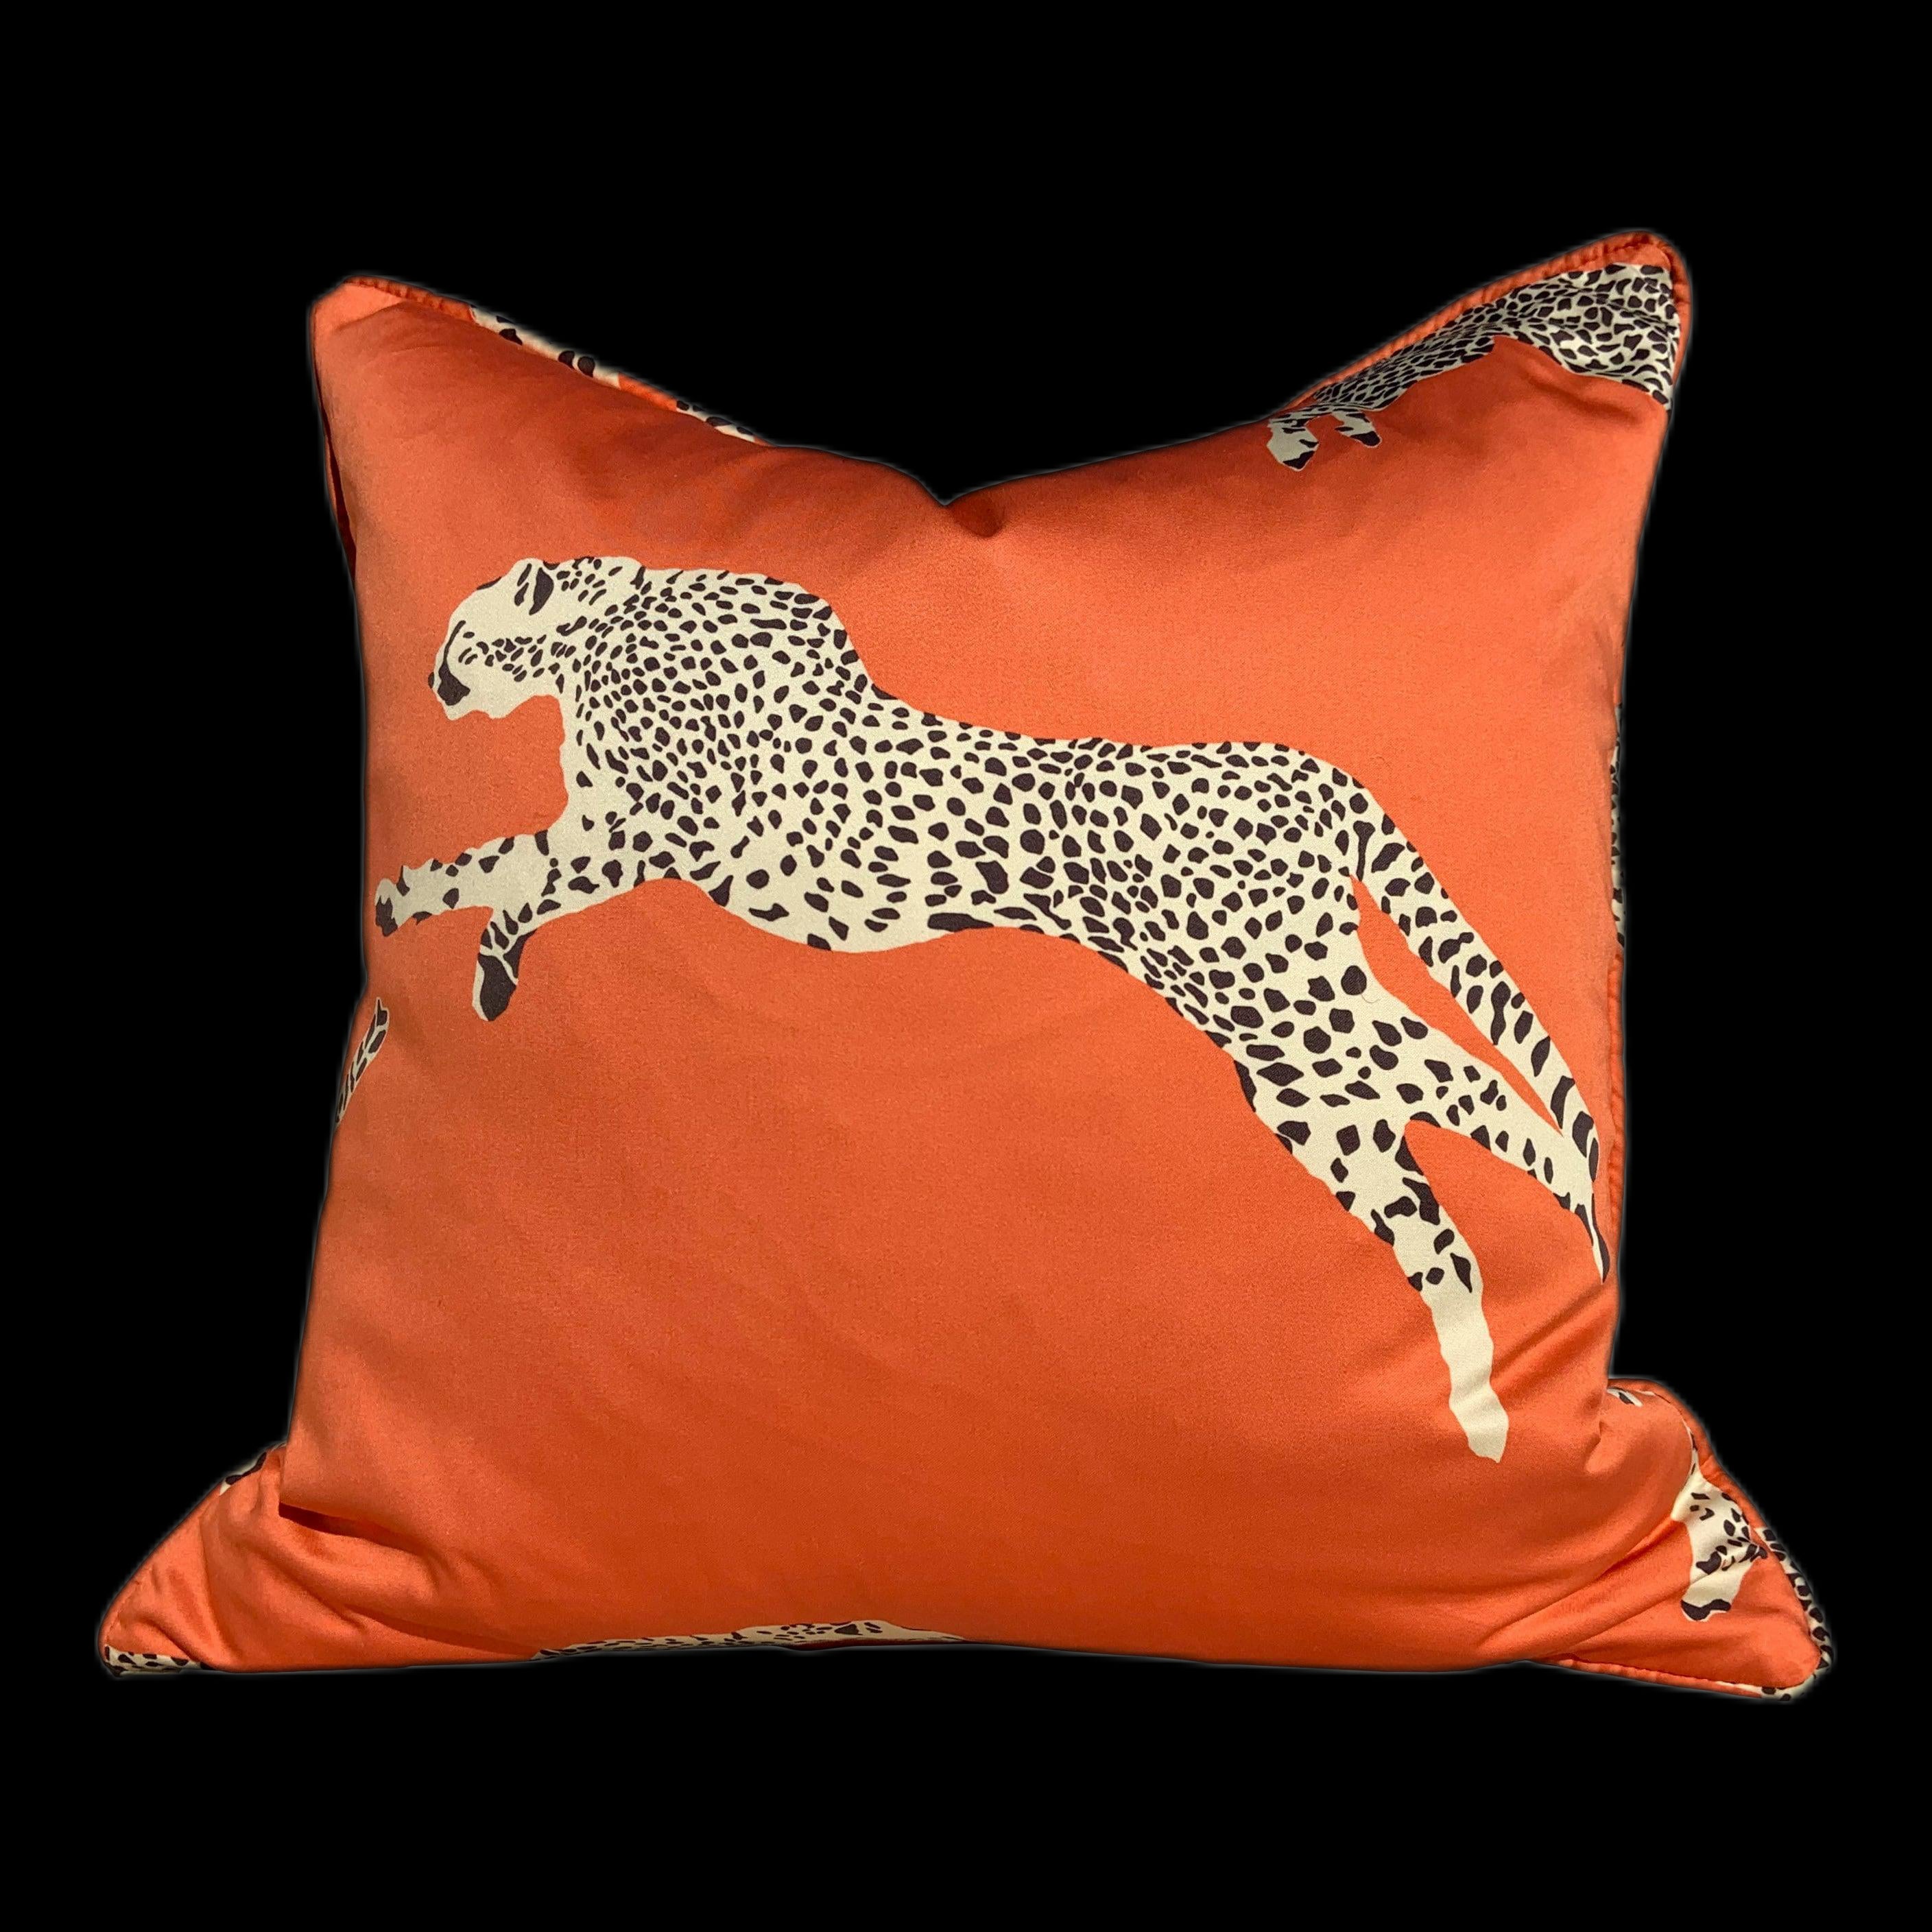 Leaping Cheetah Clementine Pillow. Animal Print Decor, Rectangular Lumbar Pillow, Safari Pillow Cover, Decorative Pillow, Euro Sham